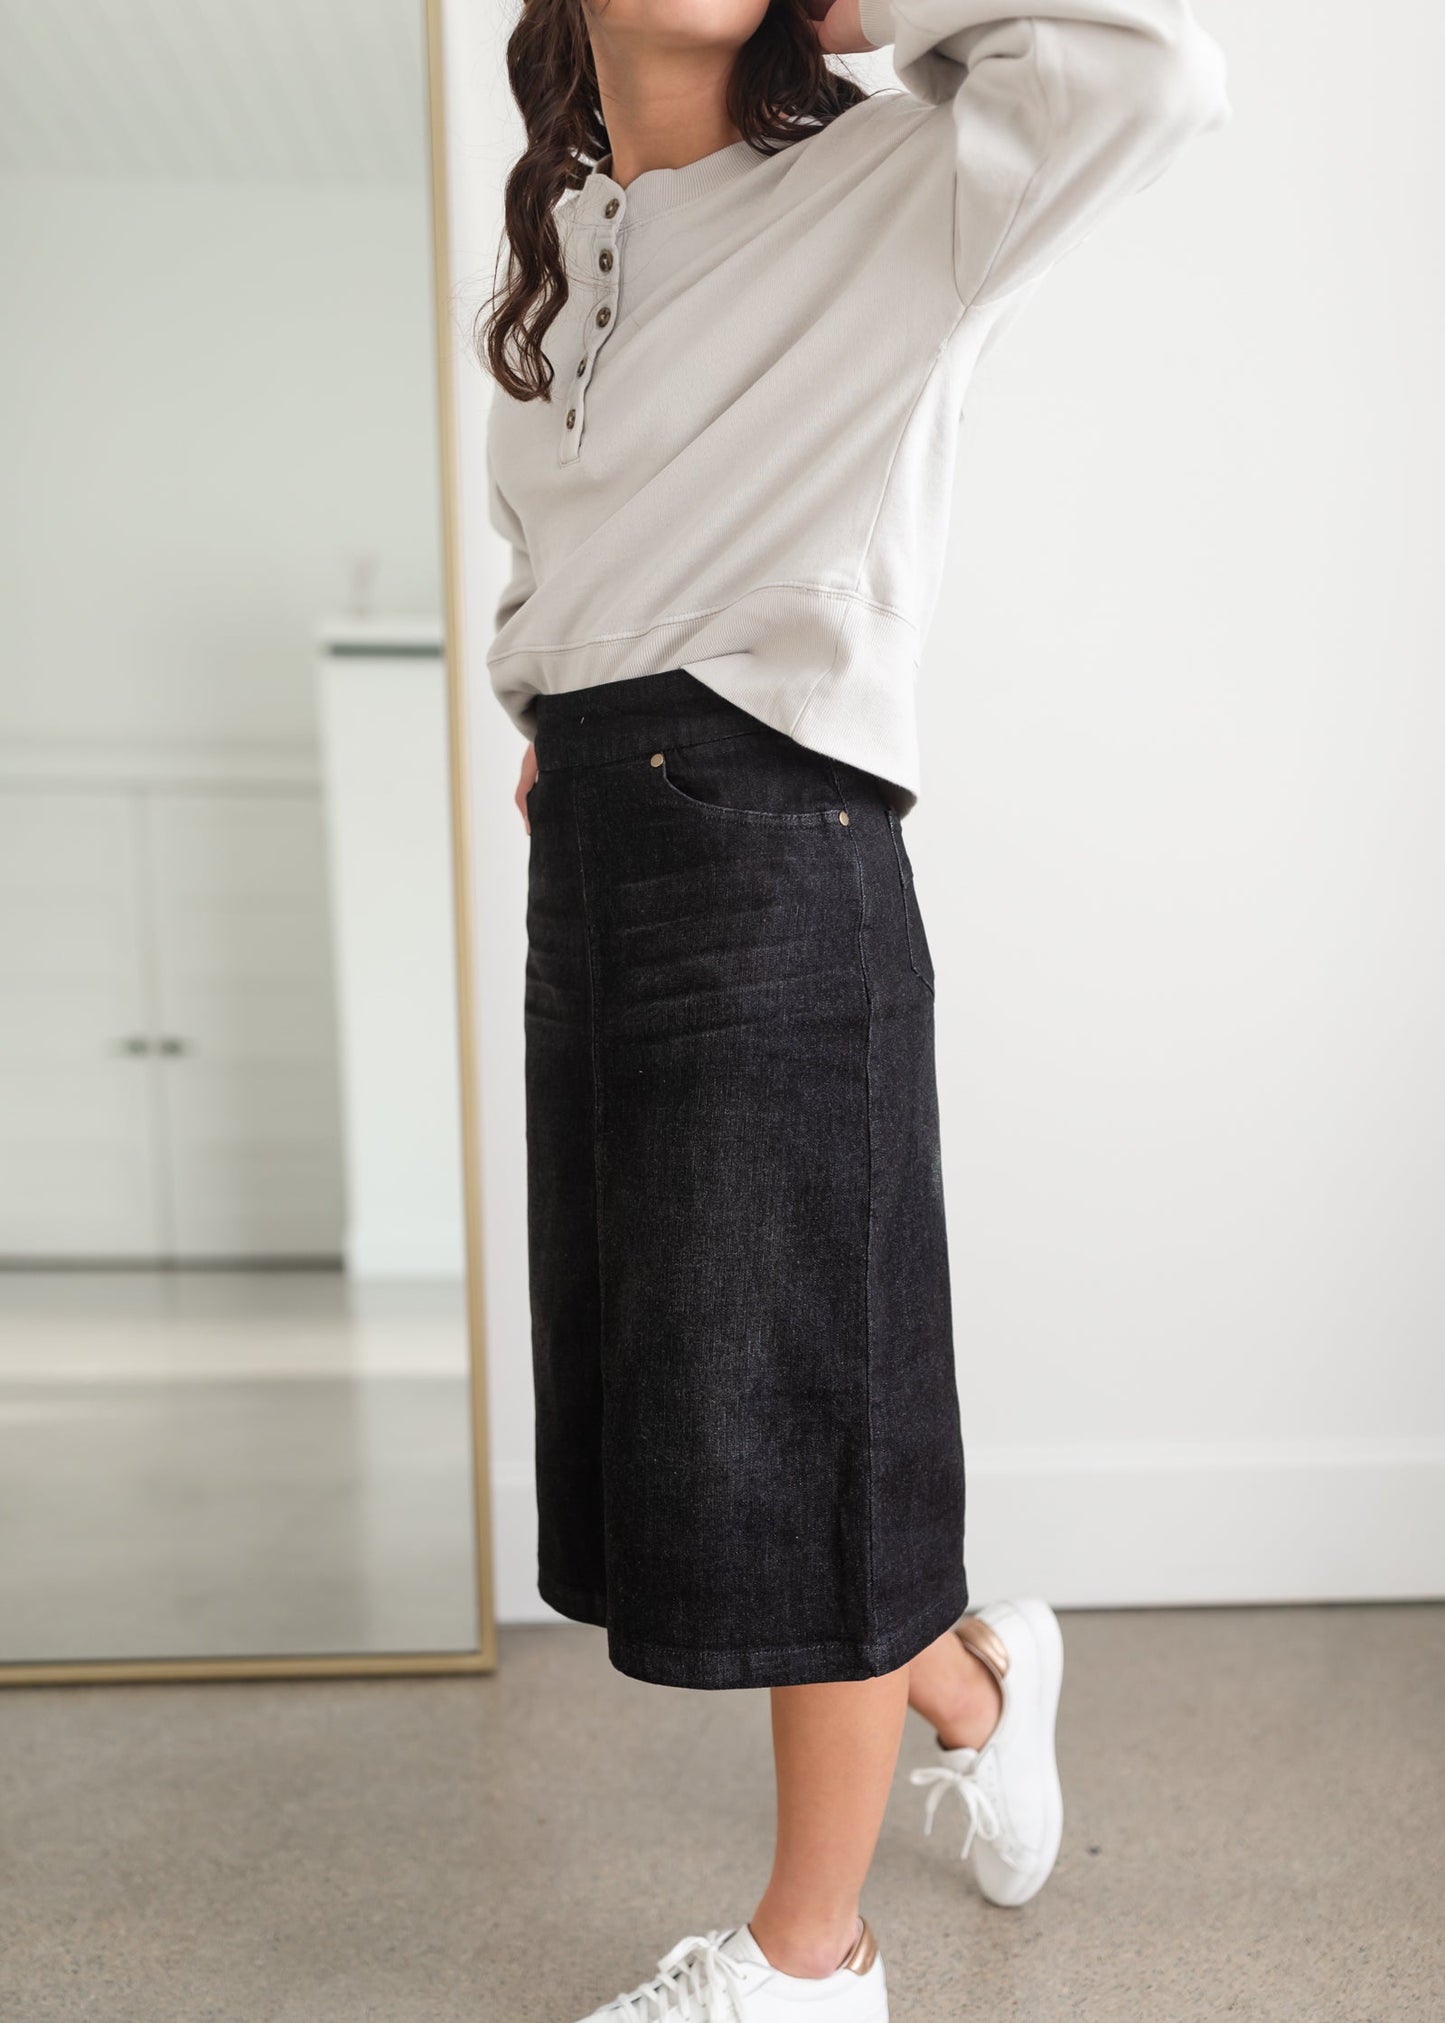 Sandra Black Midi Skirt Inherit Co. Sandra Black Midi Skirt Inherit Co. is a pull on stretch denim in black wash.